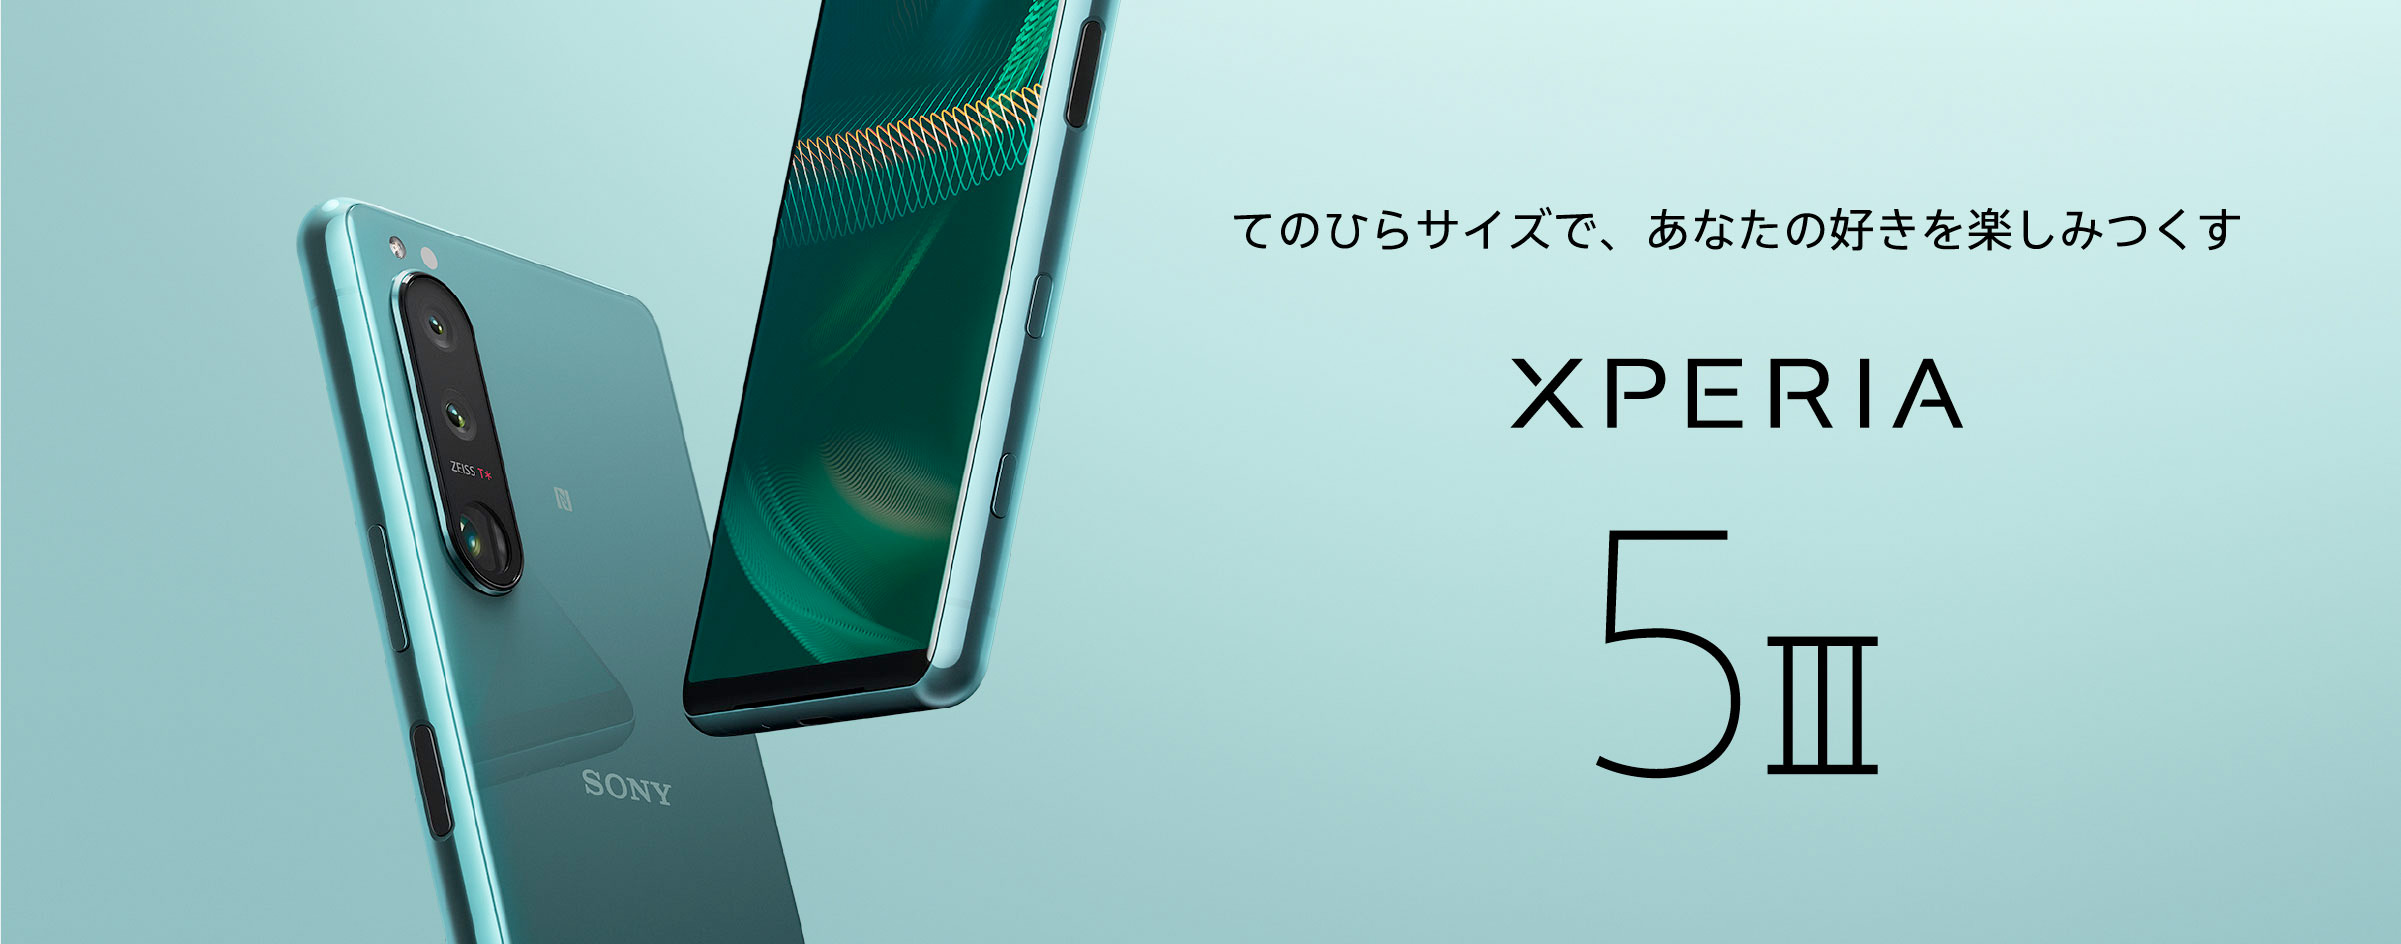 スマートフォン・携帯電話Sony Xperia 5iii